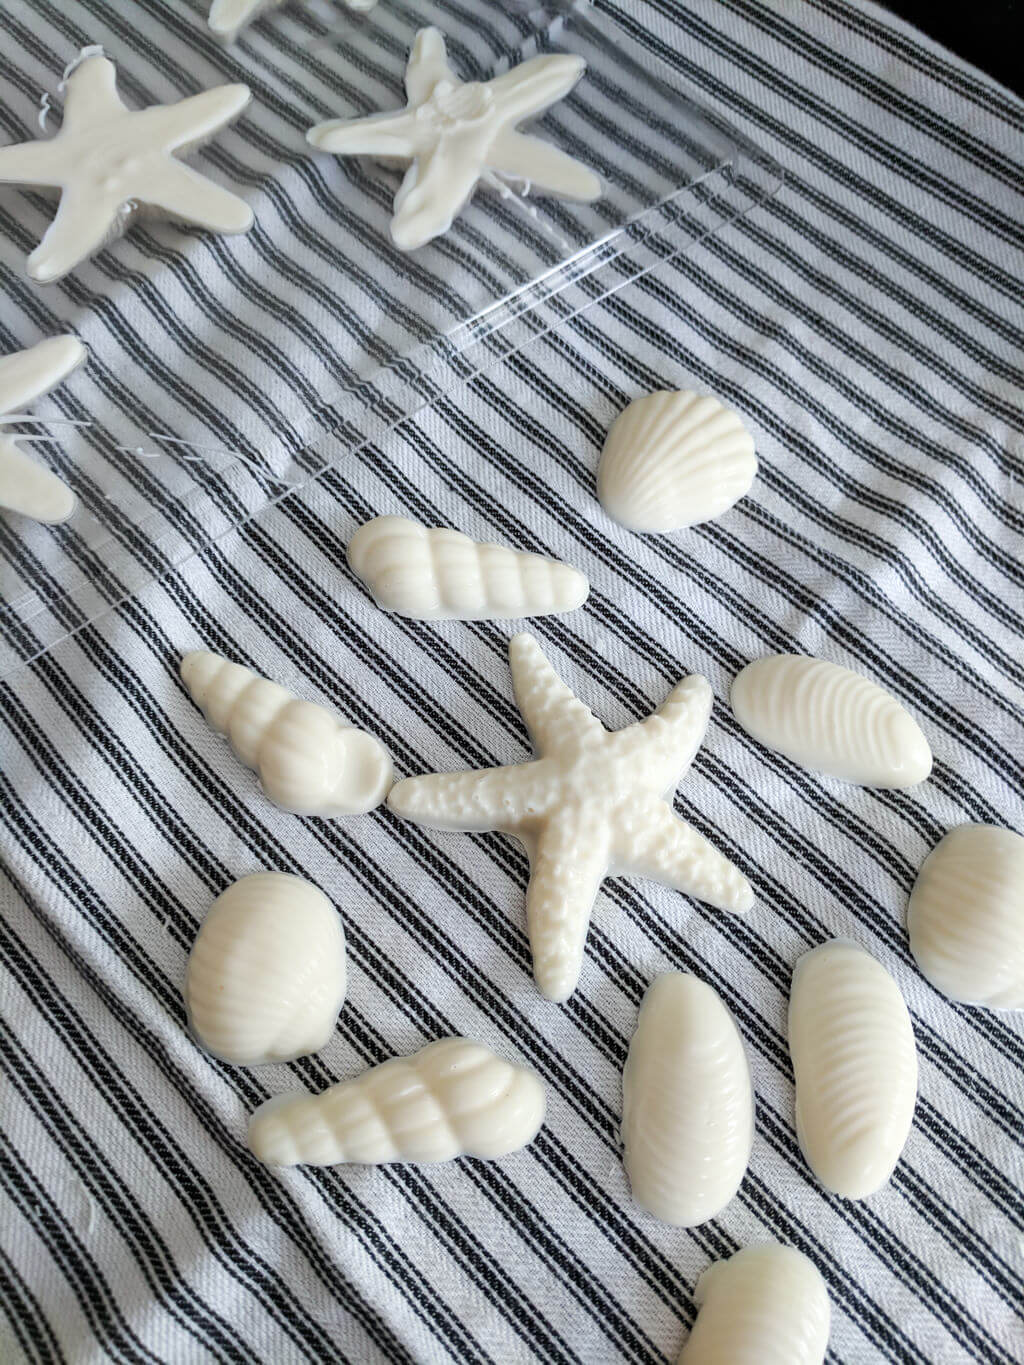 How to make white chocolate shells and starfish